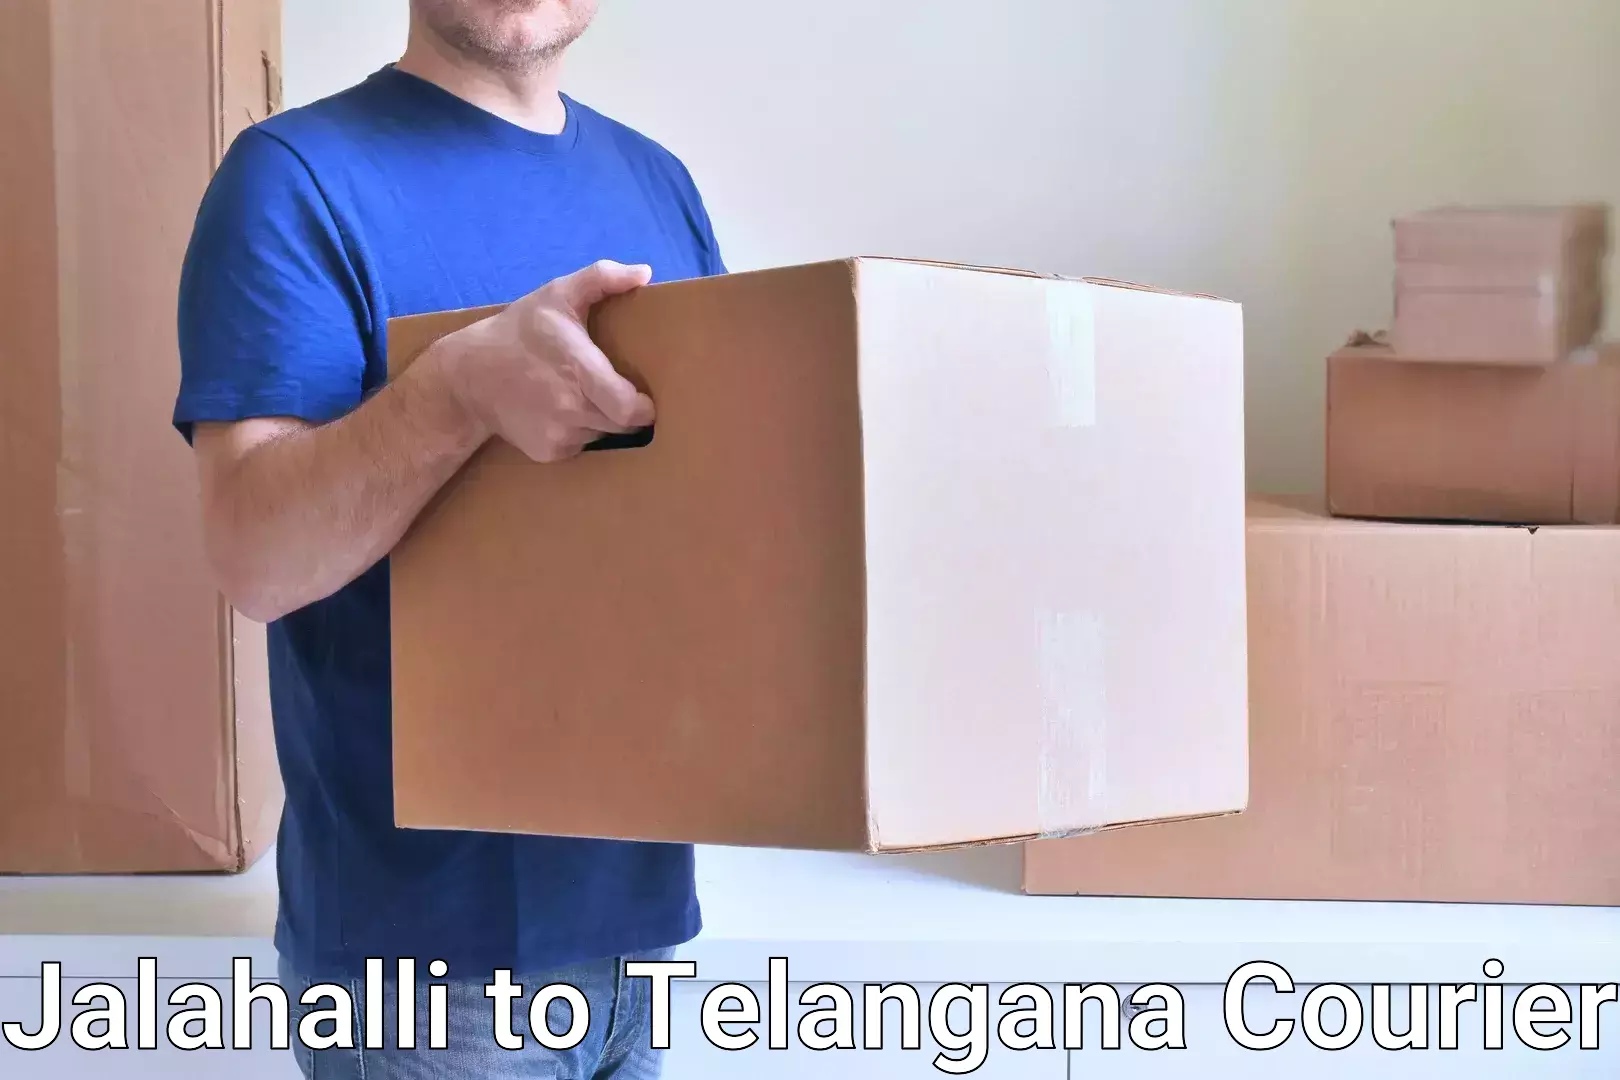 High-capacity parcel service Jalahalli to Alair